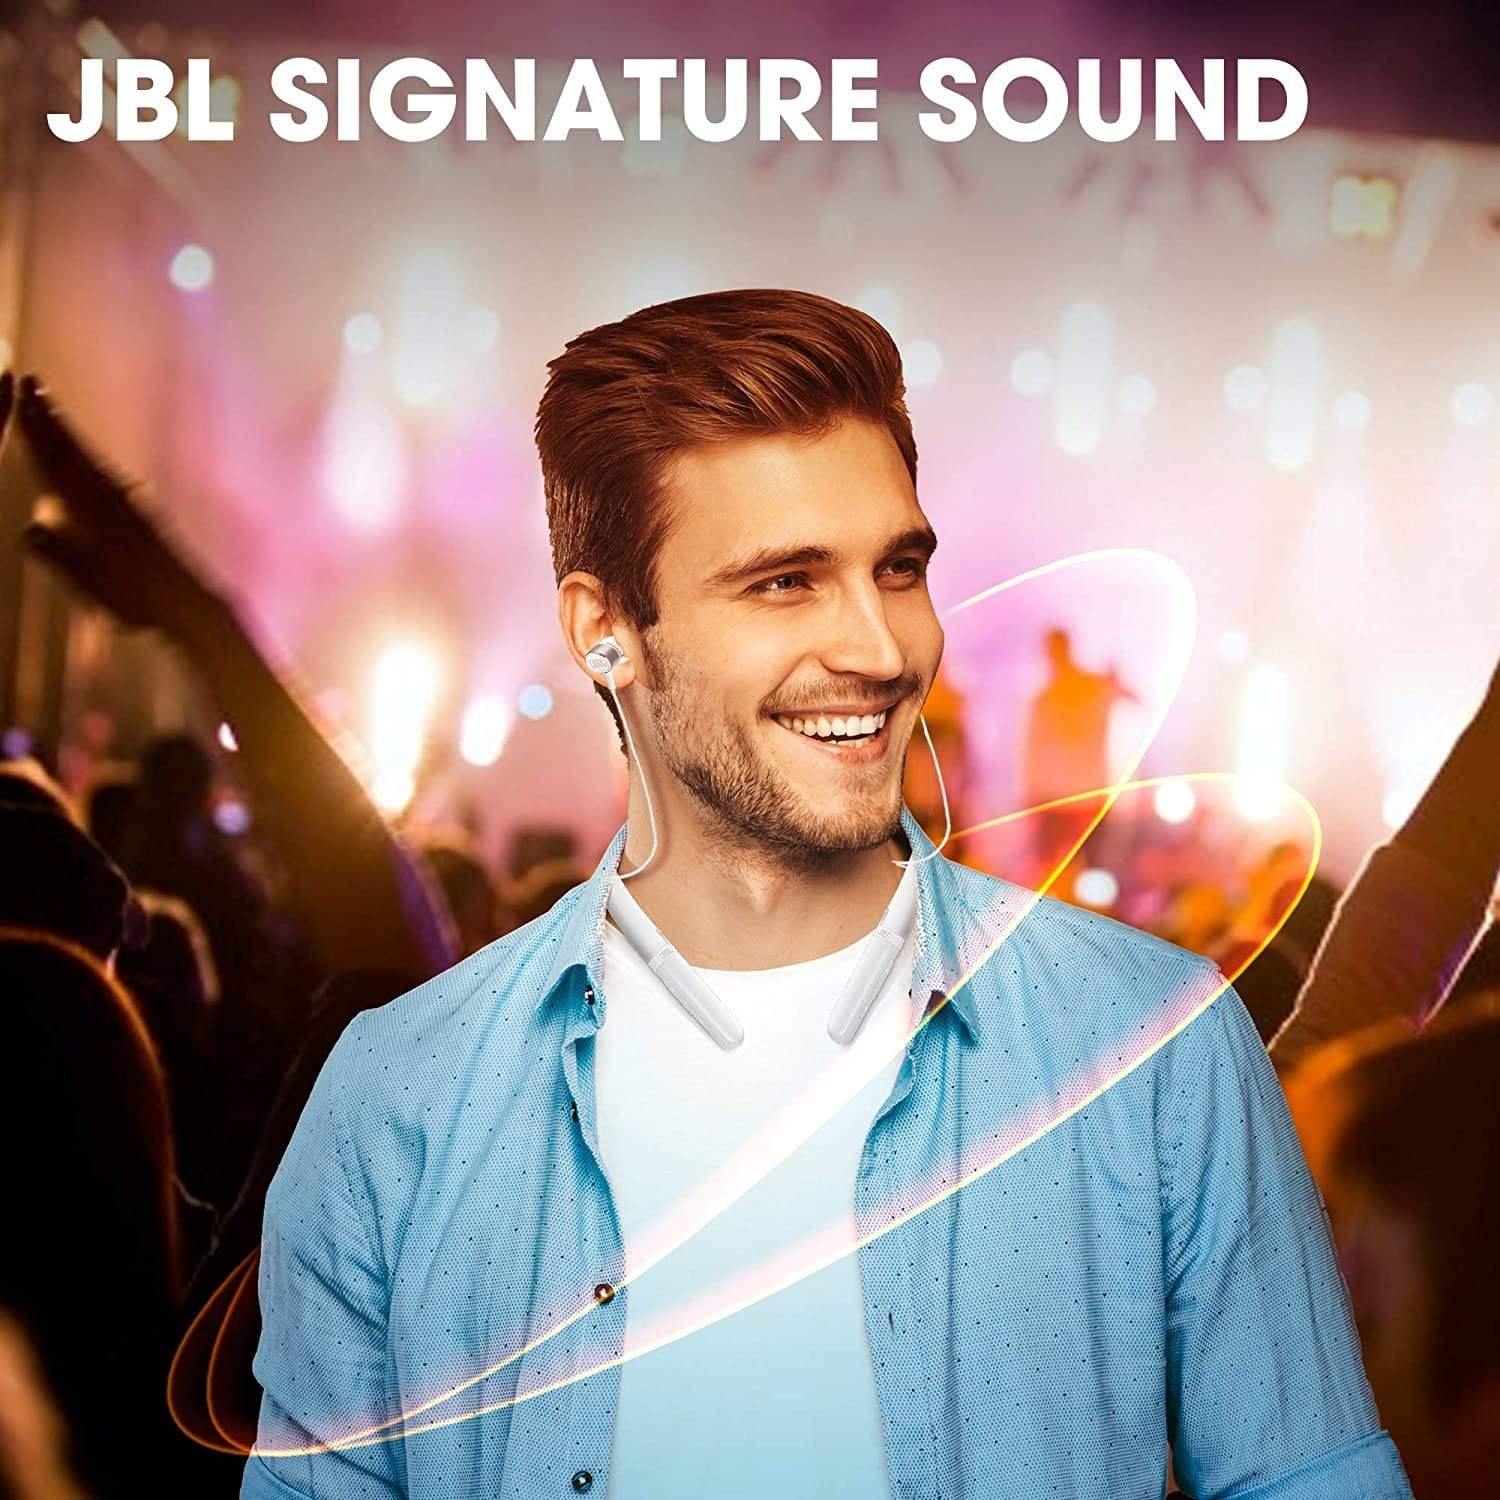 JBL LIVE 200BT In-Ear Neckband Wireless Headphones - SnapZapp